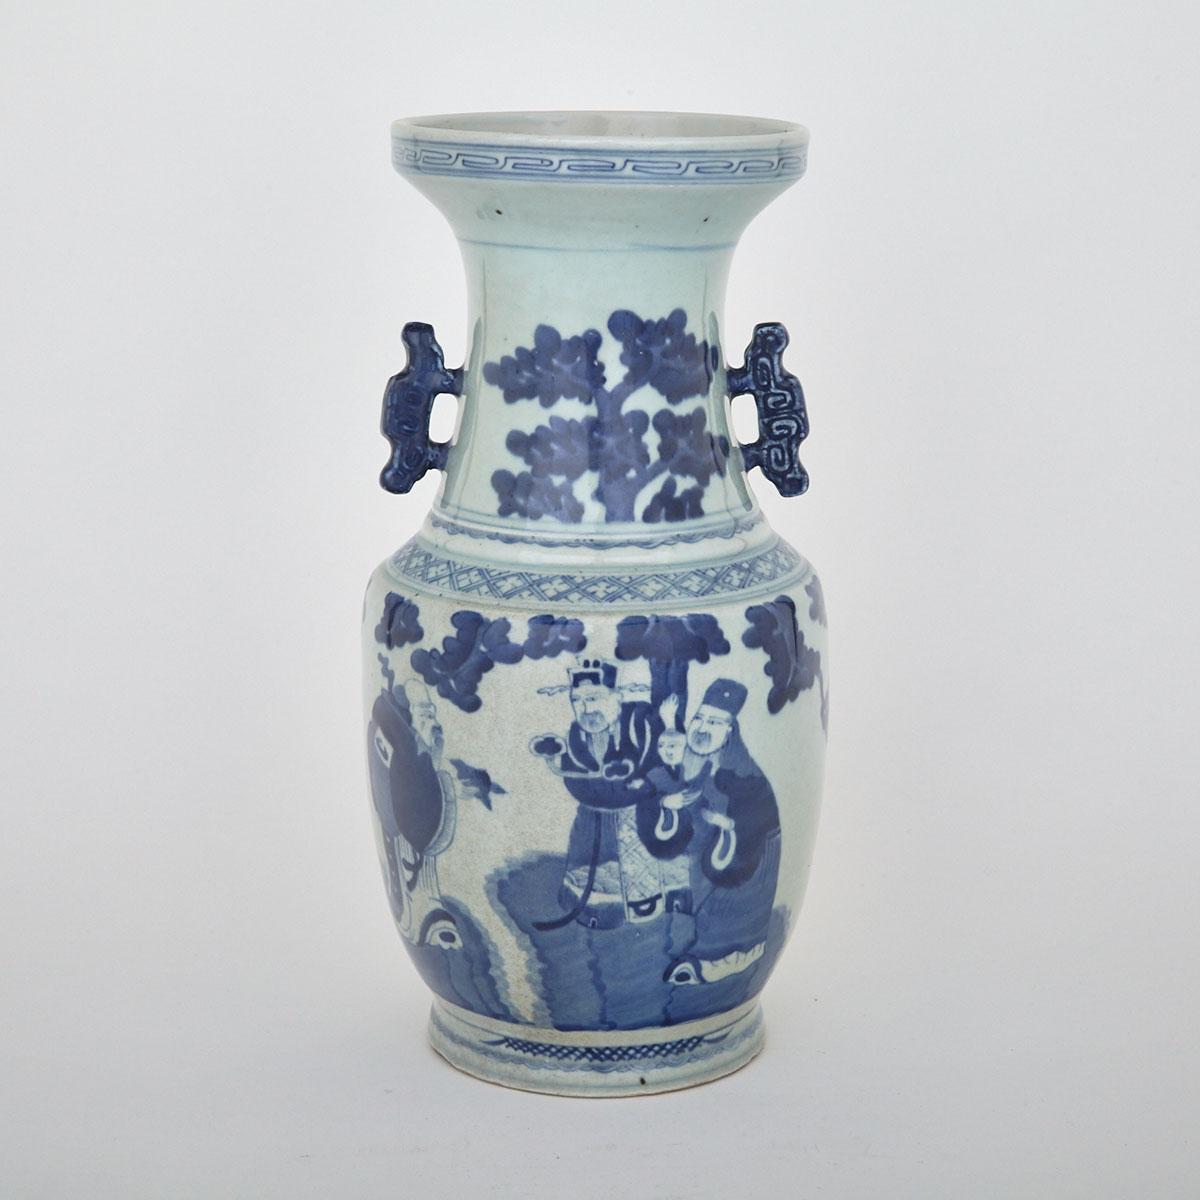 Blue and White ‘Fu Lu Shou’ Vase, Daoguang Mark